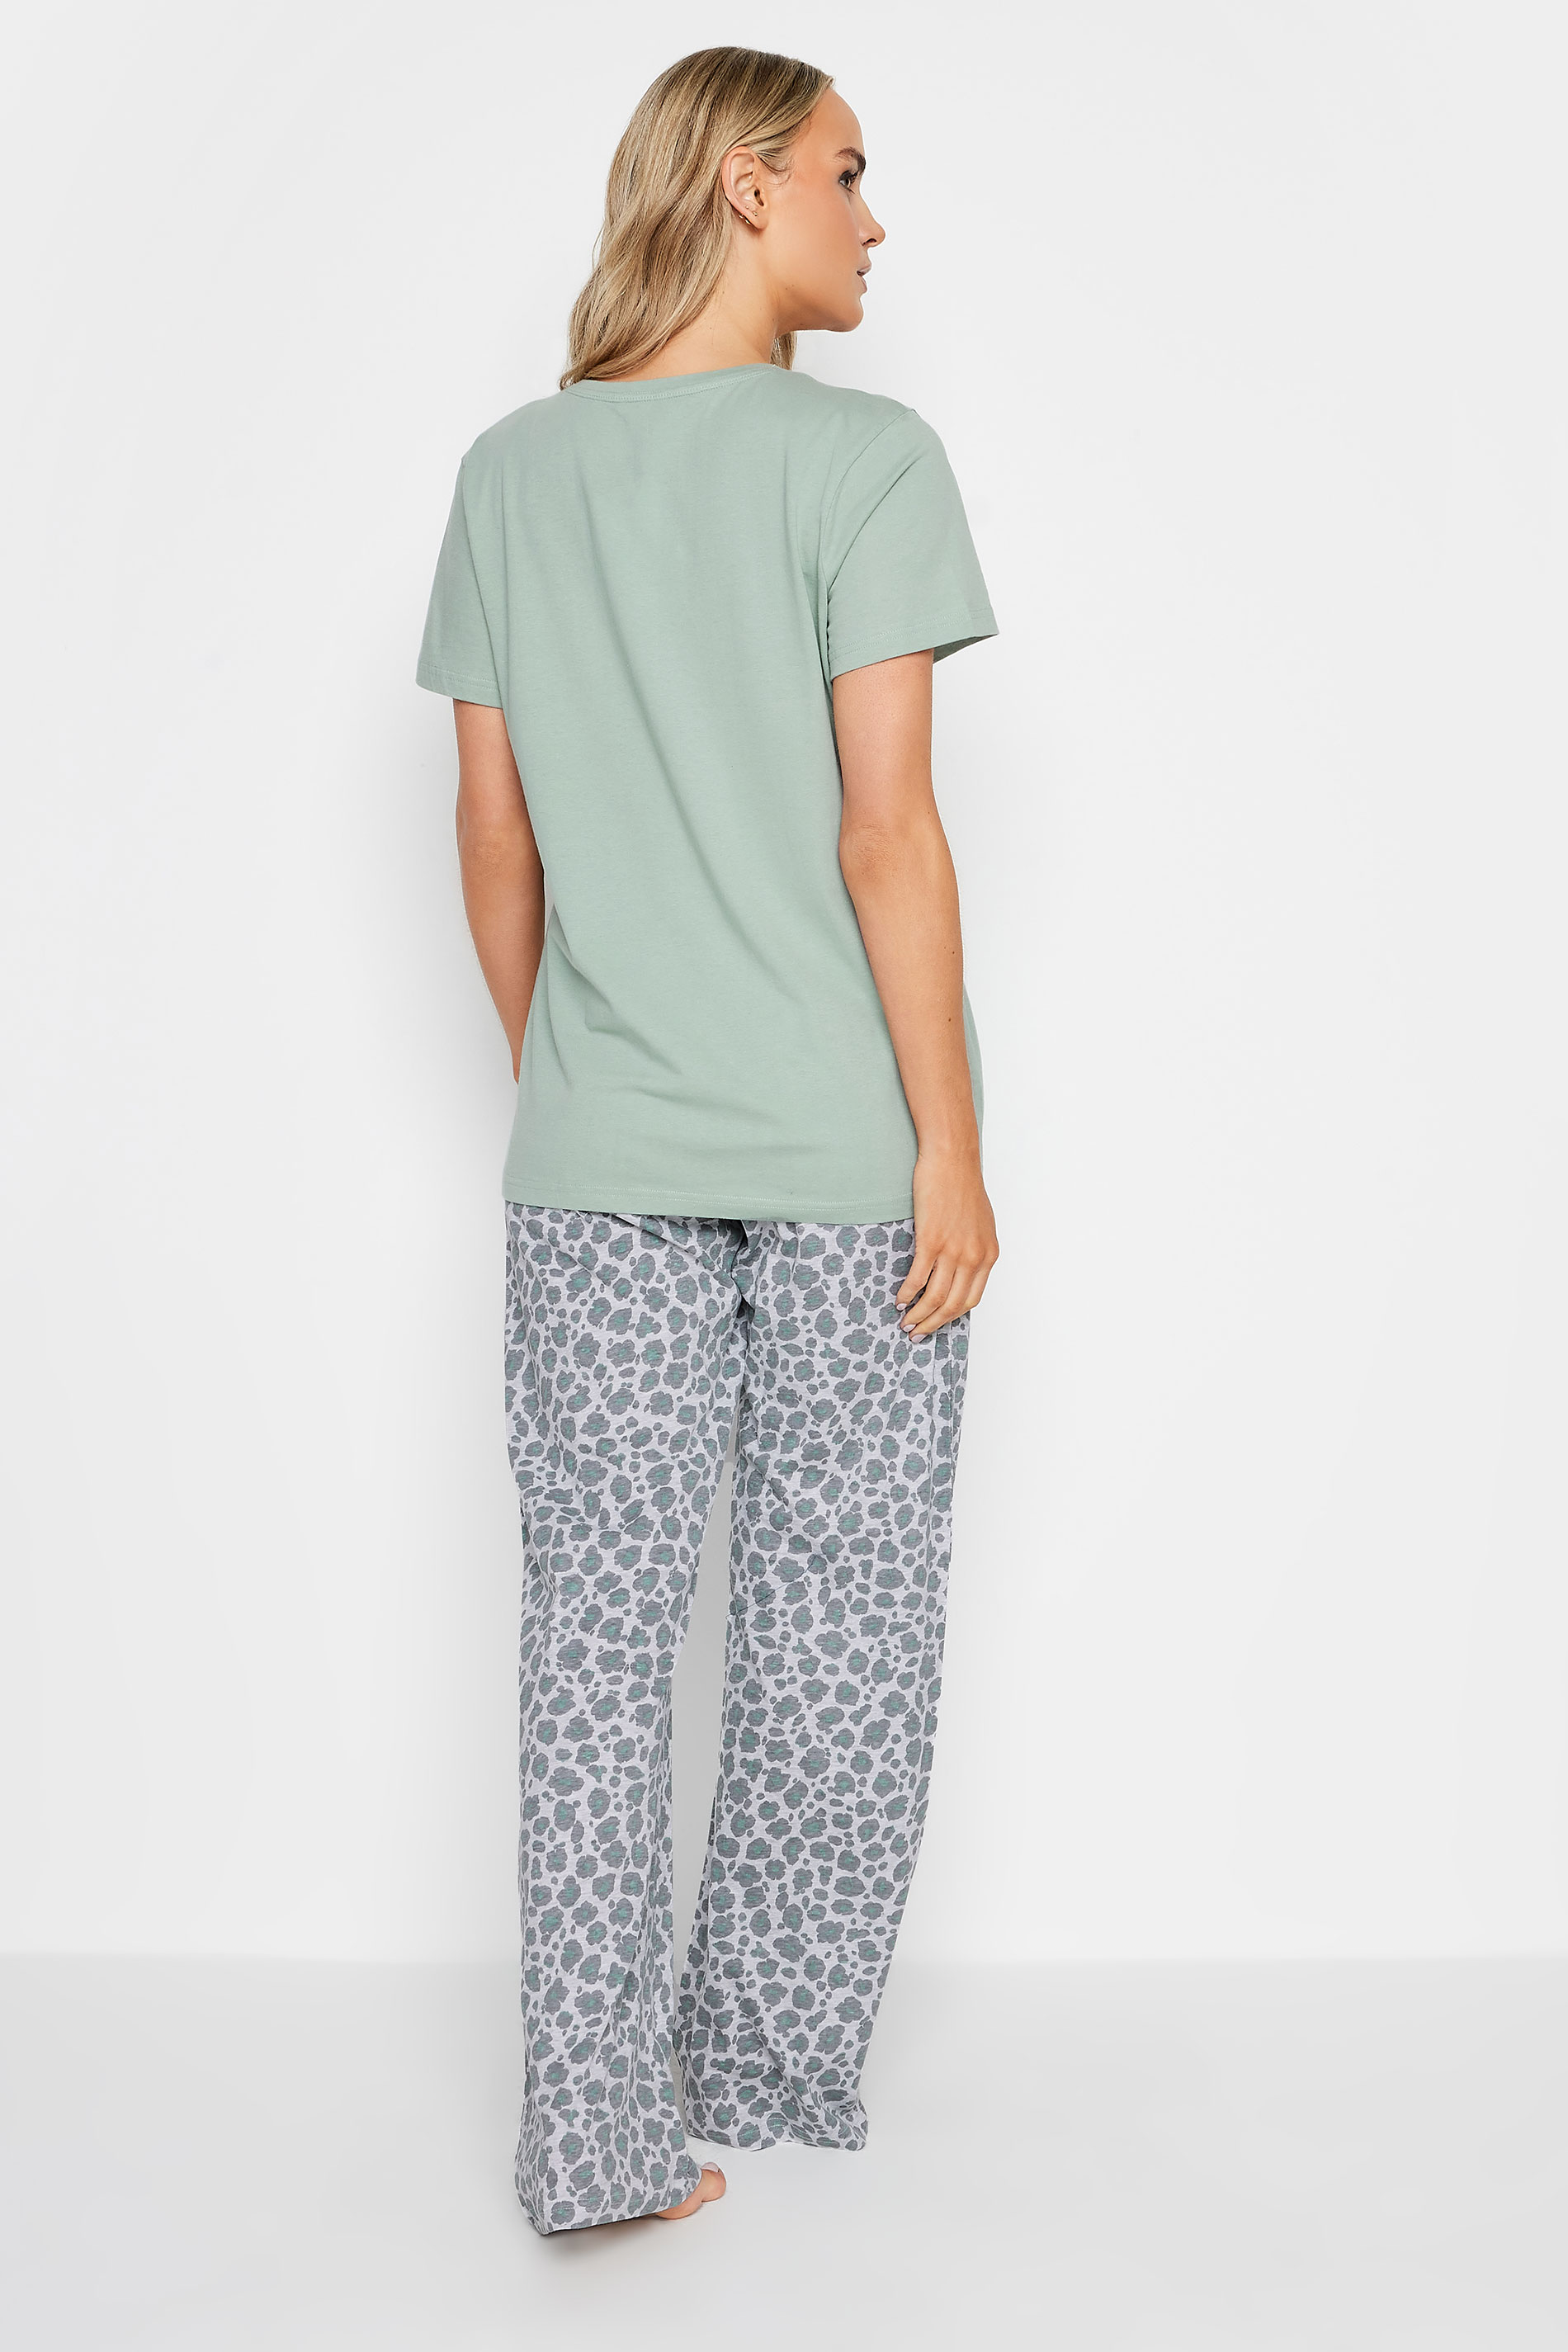 LTS Tall Green 'Wildest Dreams' Slogan Leopard Print Pyjama Set | Long Tall Sally  3